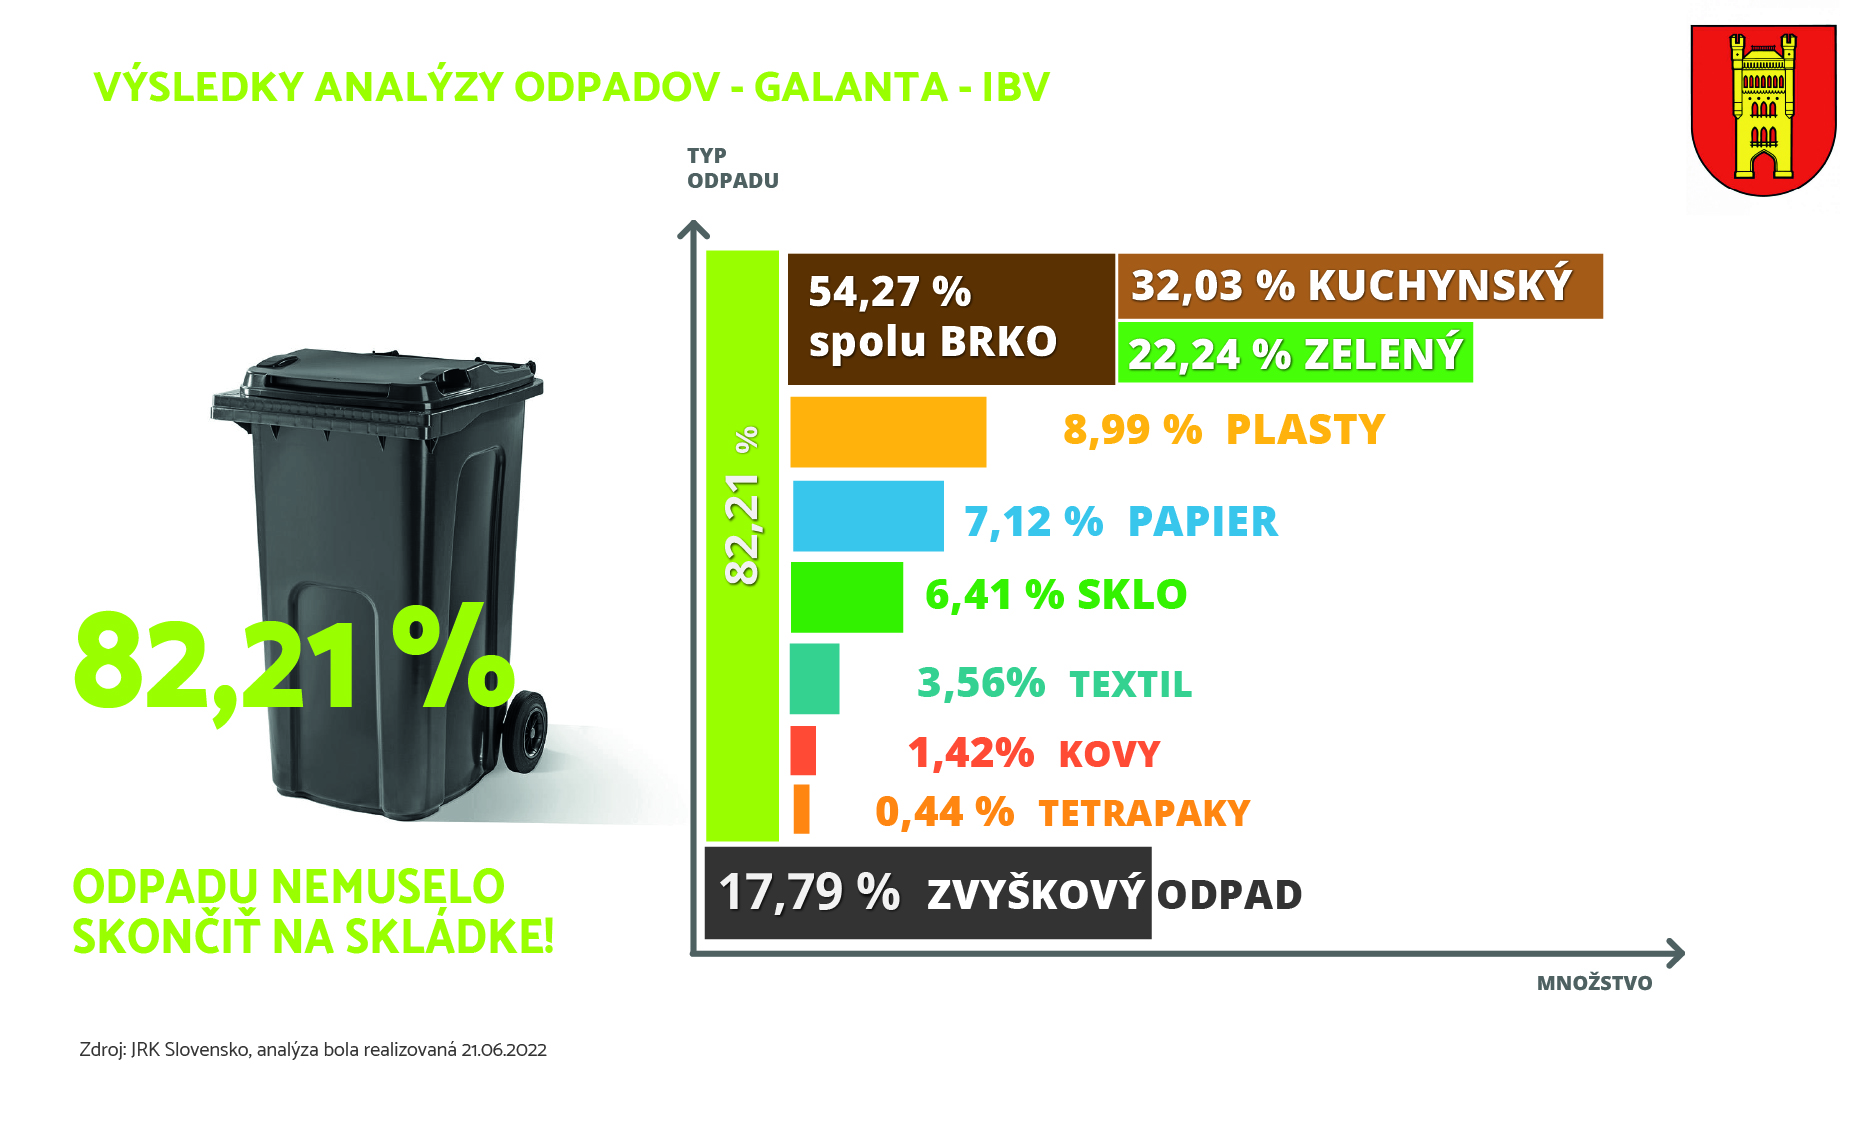 Analýza odpadu Galanta